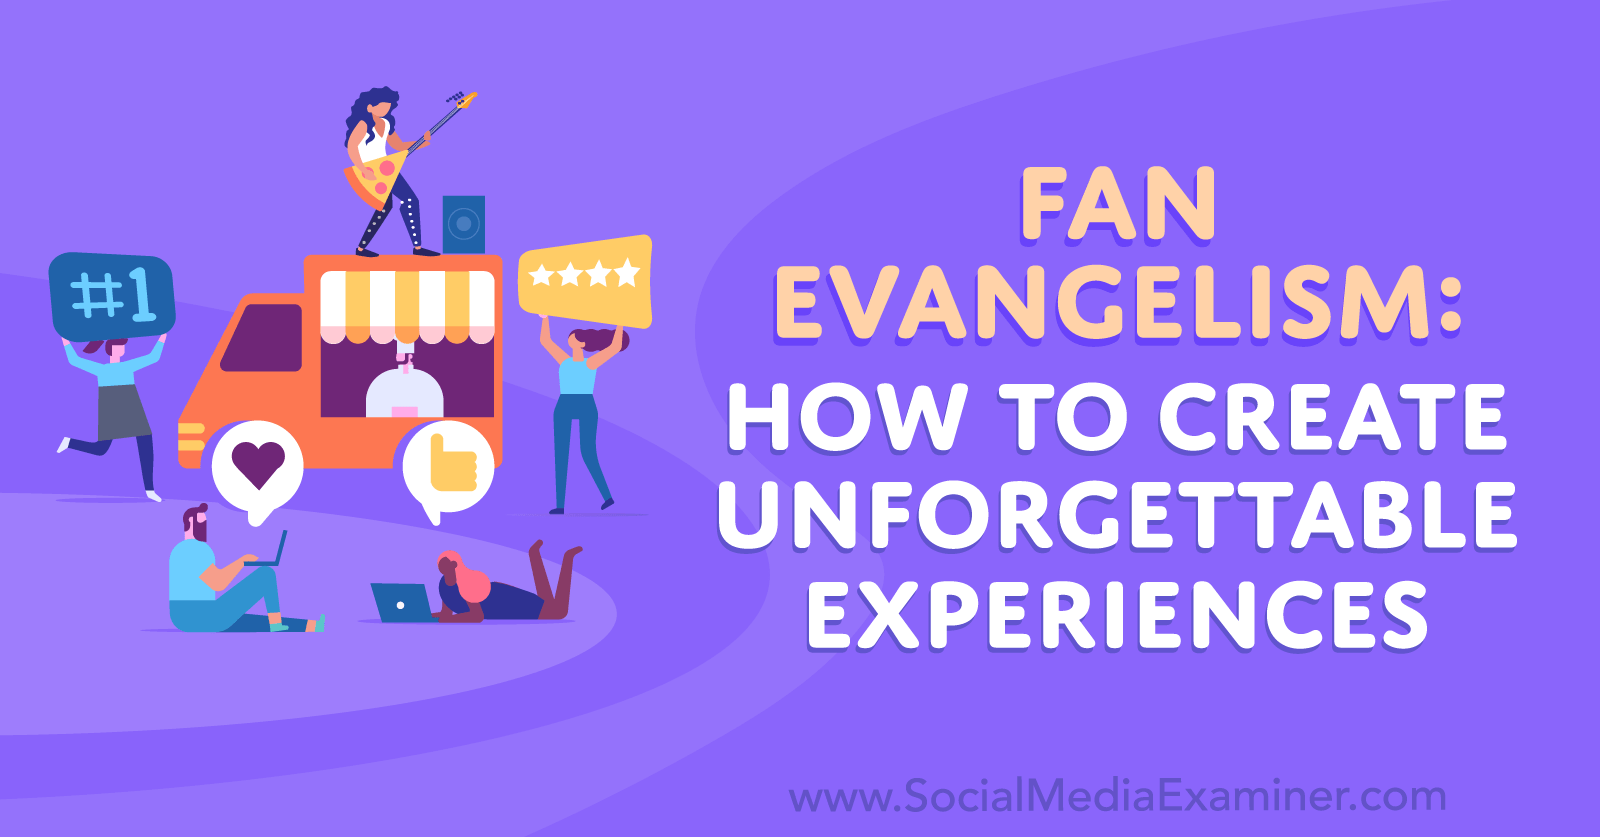 Évangélisation des fans : comment créer des expériences inoubliables - Examinateur des médias sociaux